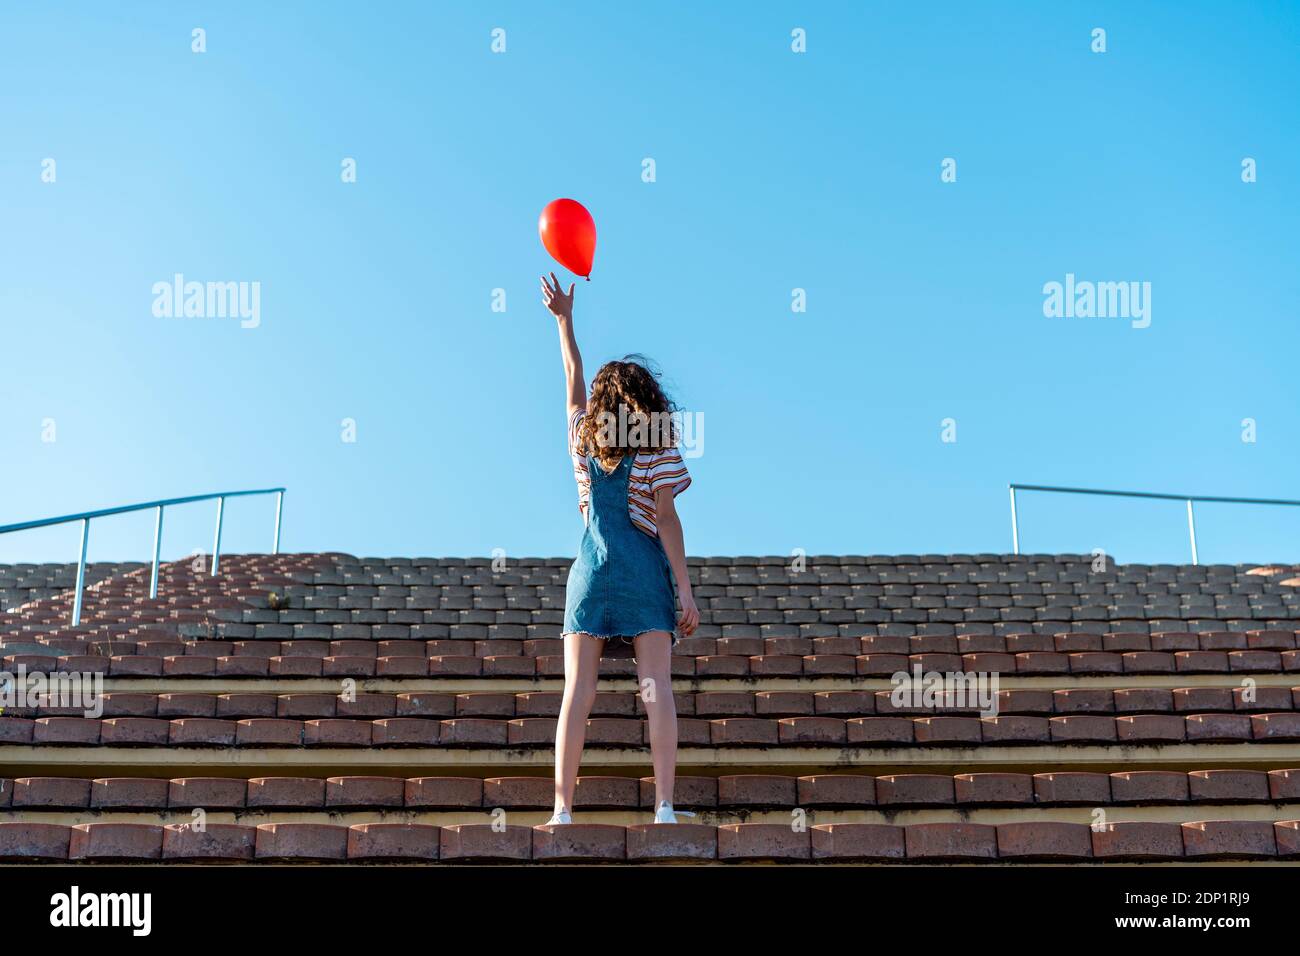 Junge Frau steht auf Tribünen, Loslassen von einem roten Ballon Stockfoto